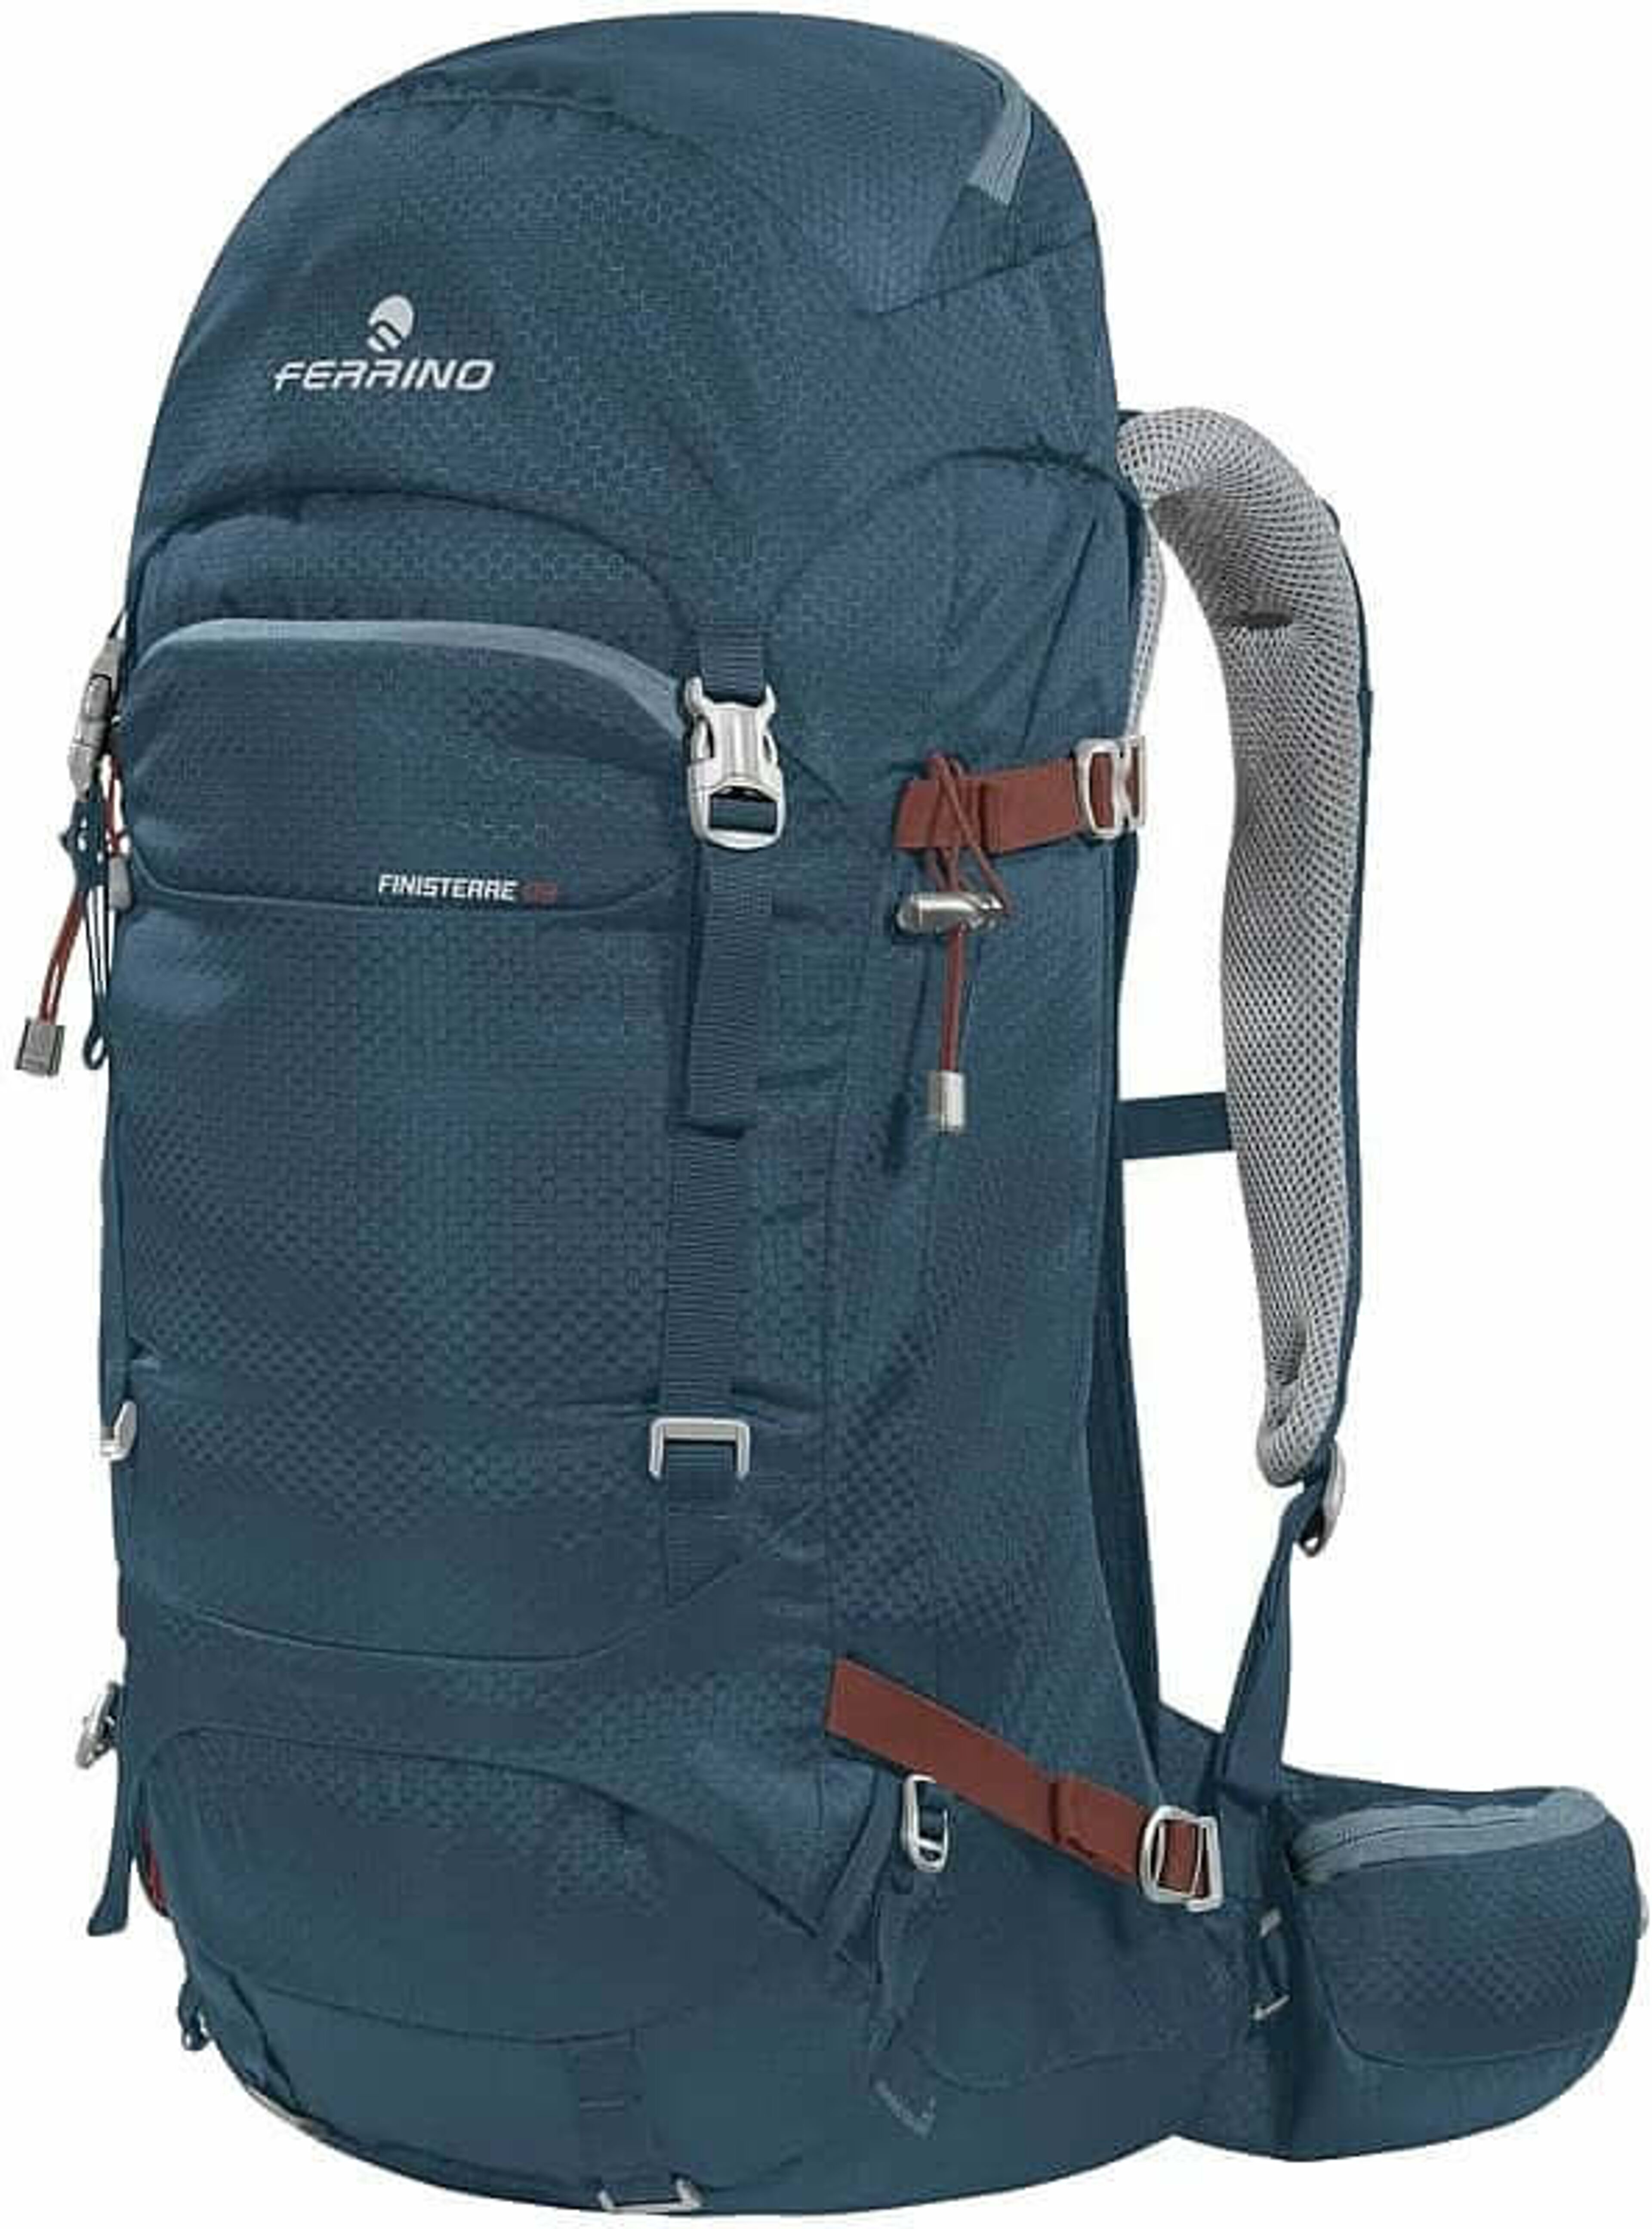 Ferrino Finisterre 48 Backpack